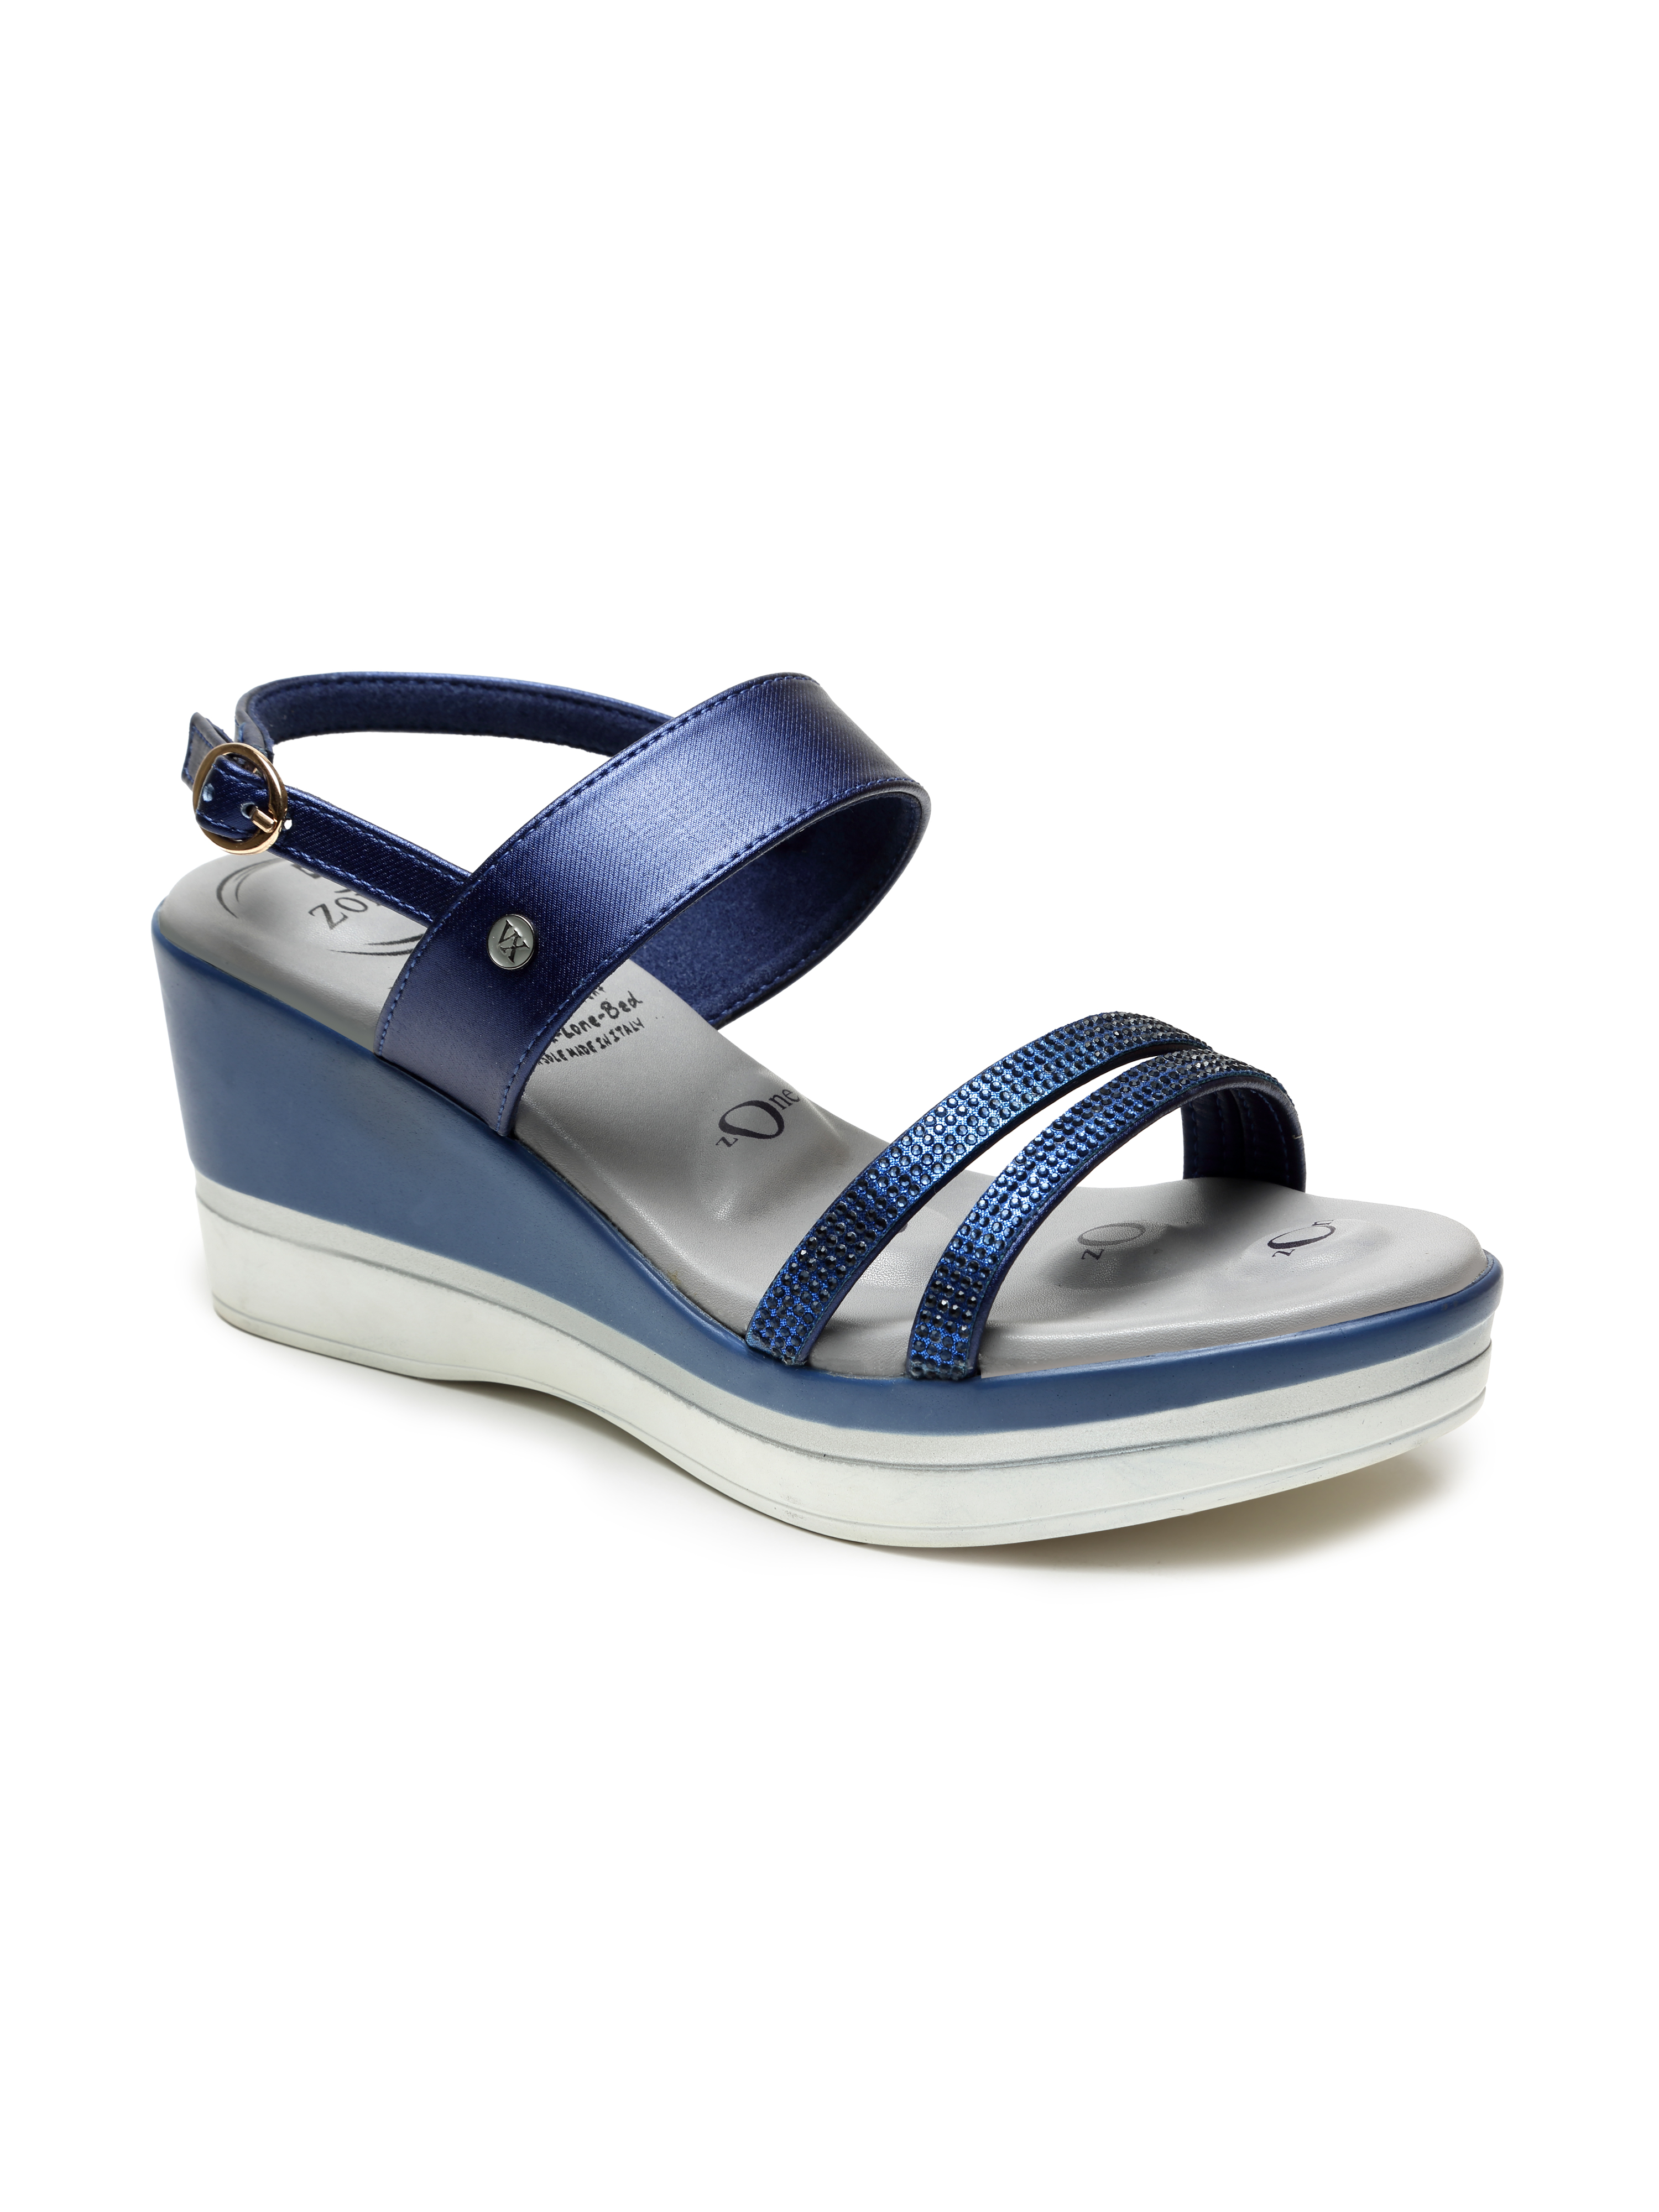 VON WELLX GERMANY comfort women's blue casual sandals URSULA